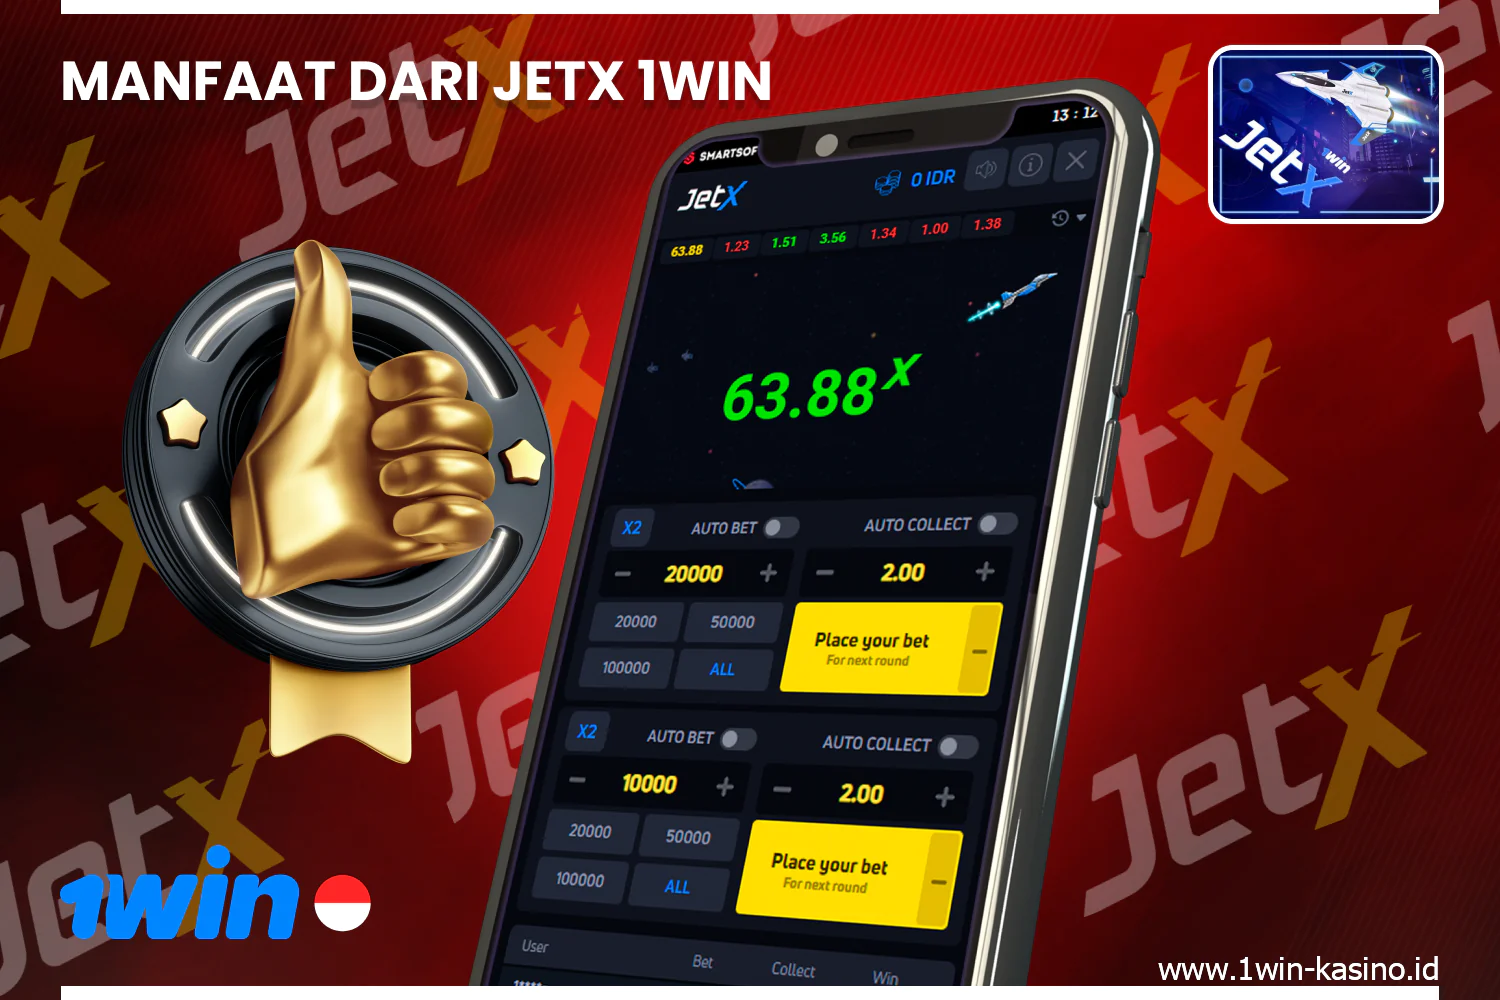 1win JetX memiliki sejumlah keunggulan dan fitur yang membuatnya menjadi permainan yang populer di kalangan penjudi Indonesia